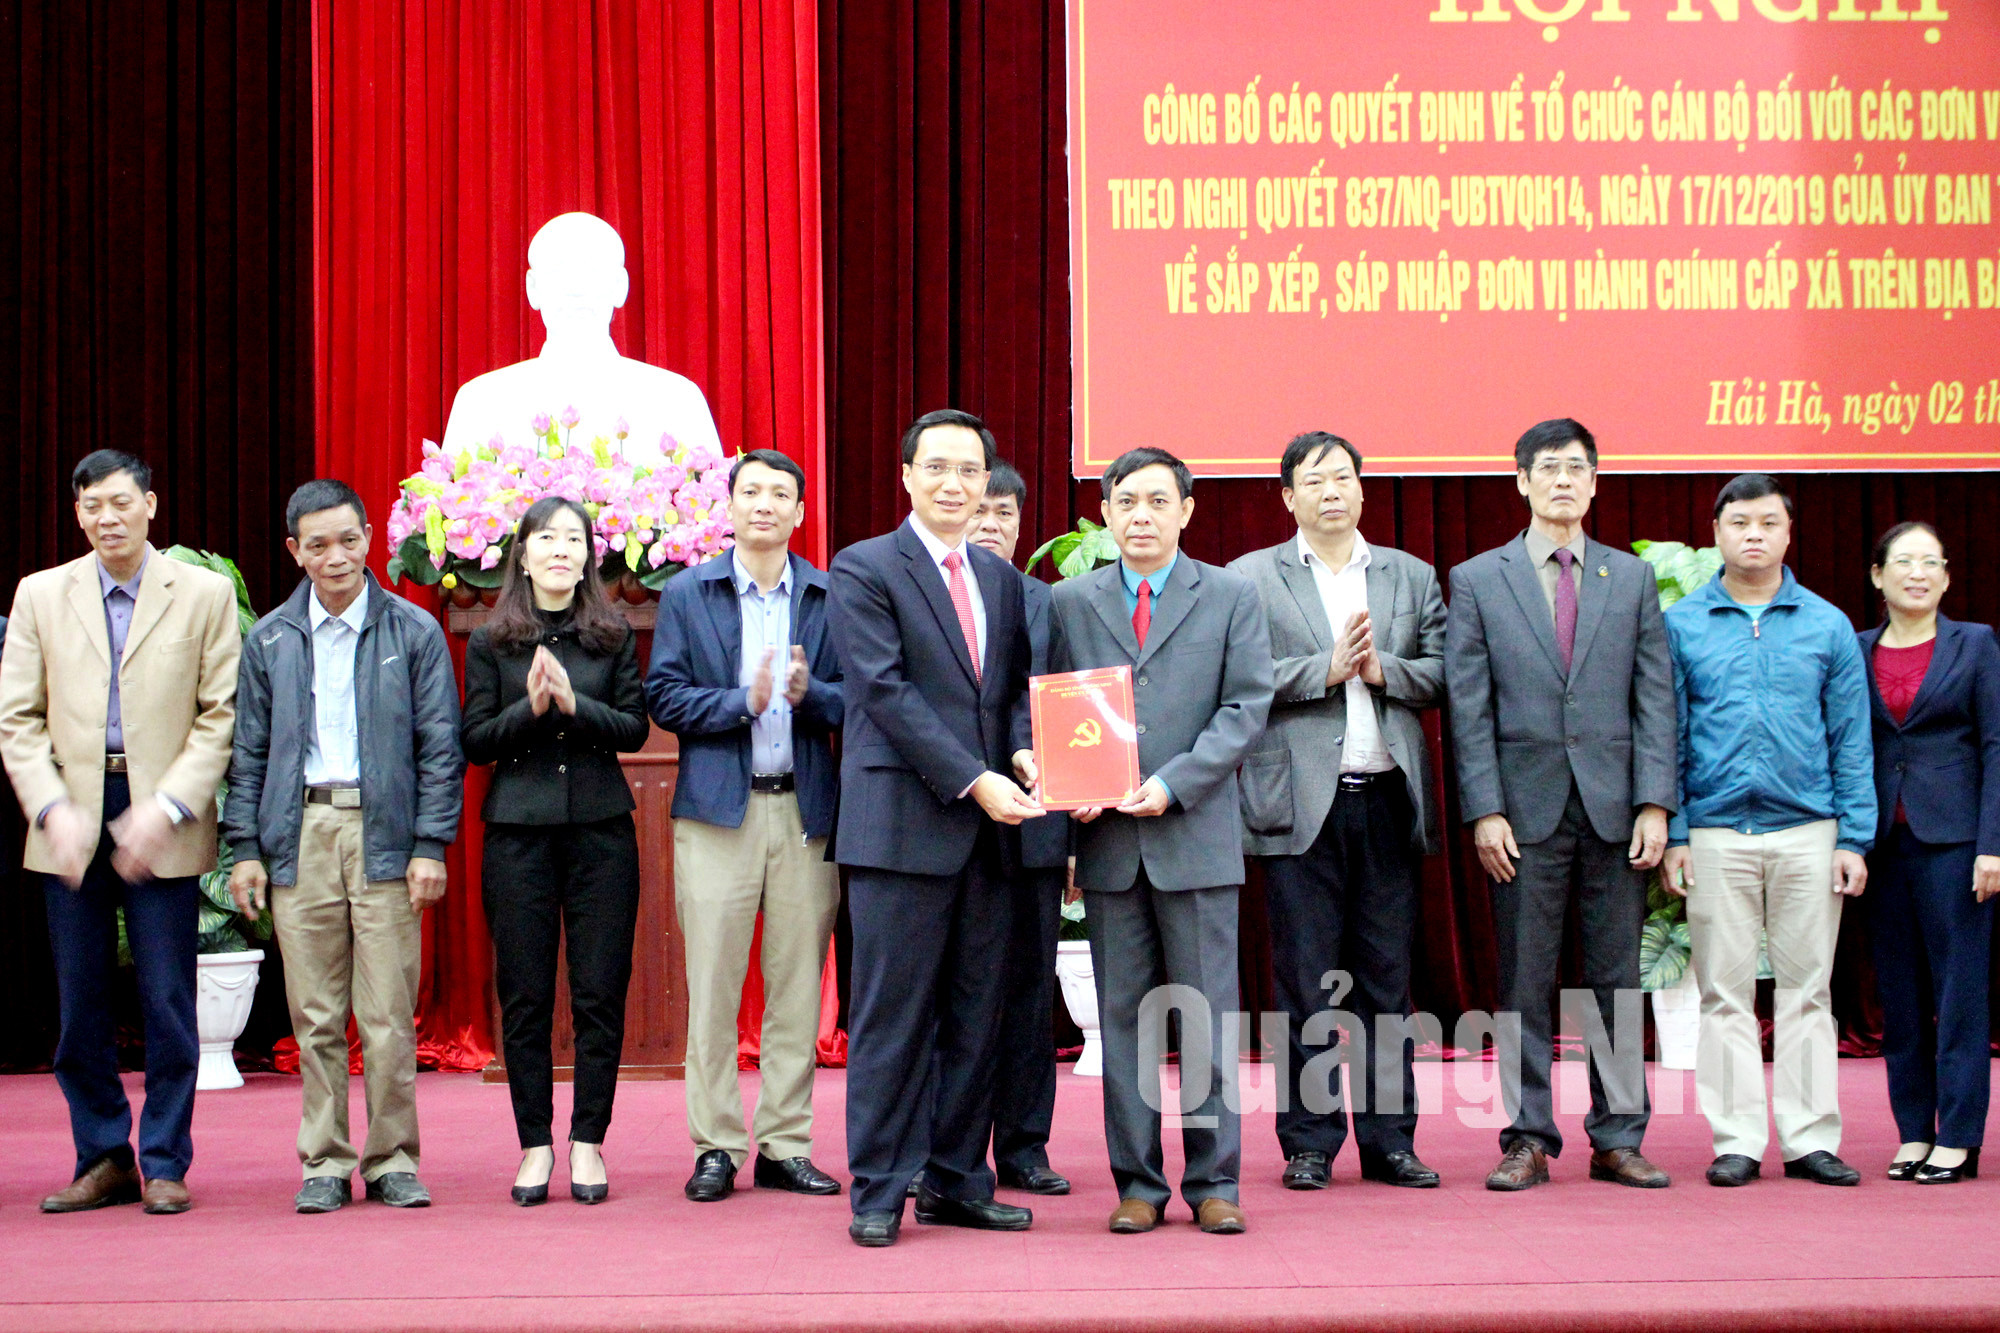 Đảng bộ huyện Hải Hà công bố thành lập Đảng bộ thị trấn Quảng Hà mới sau sáp nhập (1-2020). Ảnh: Thu Chung